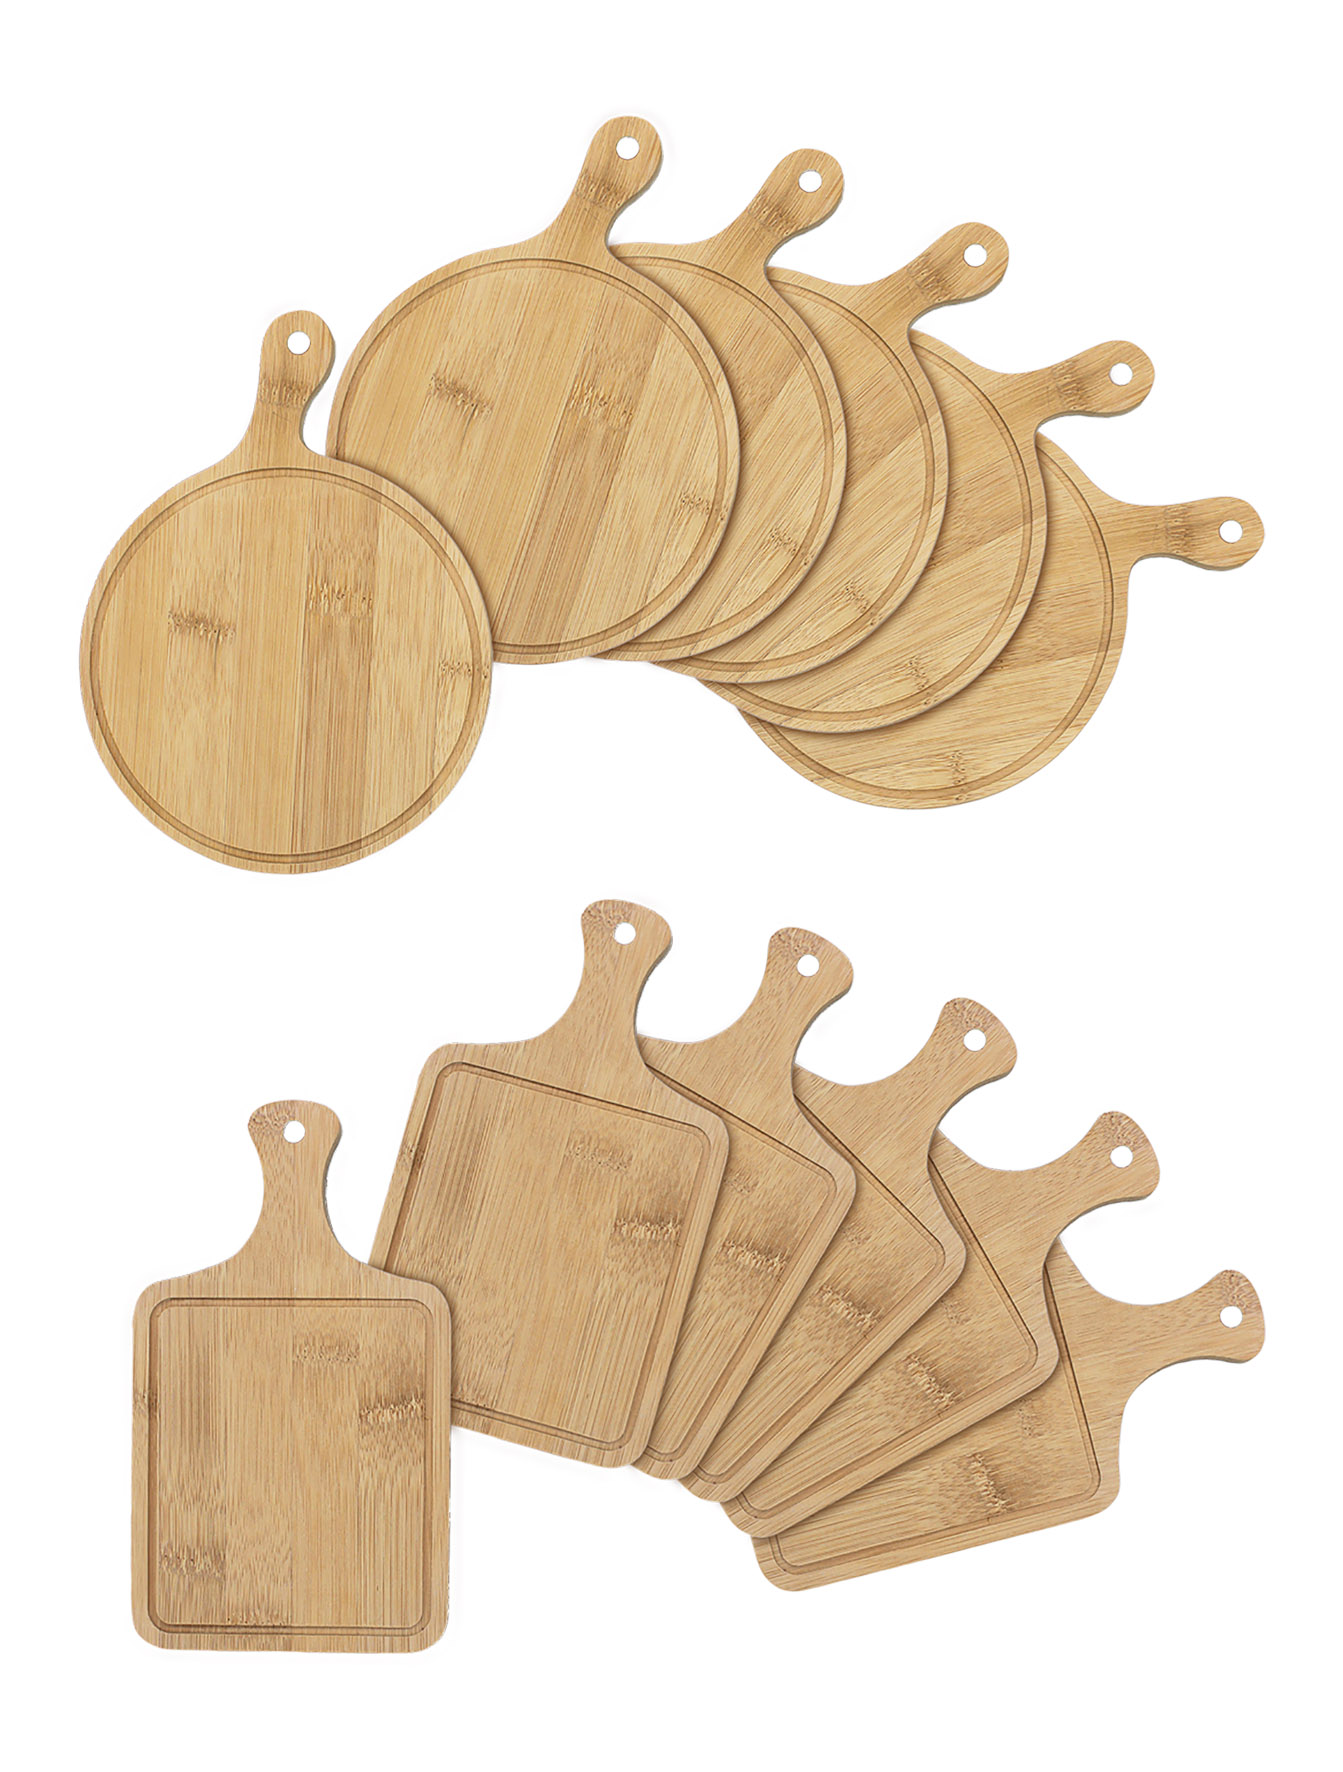 Bambus Servierbrett Mini 6er Set - rund oder eckig - Kleines Holz Servierplatte für Snacks und Tapas - Brettchen mit Griff für Vorspeise Antipasti Servier Tablett